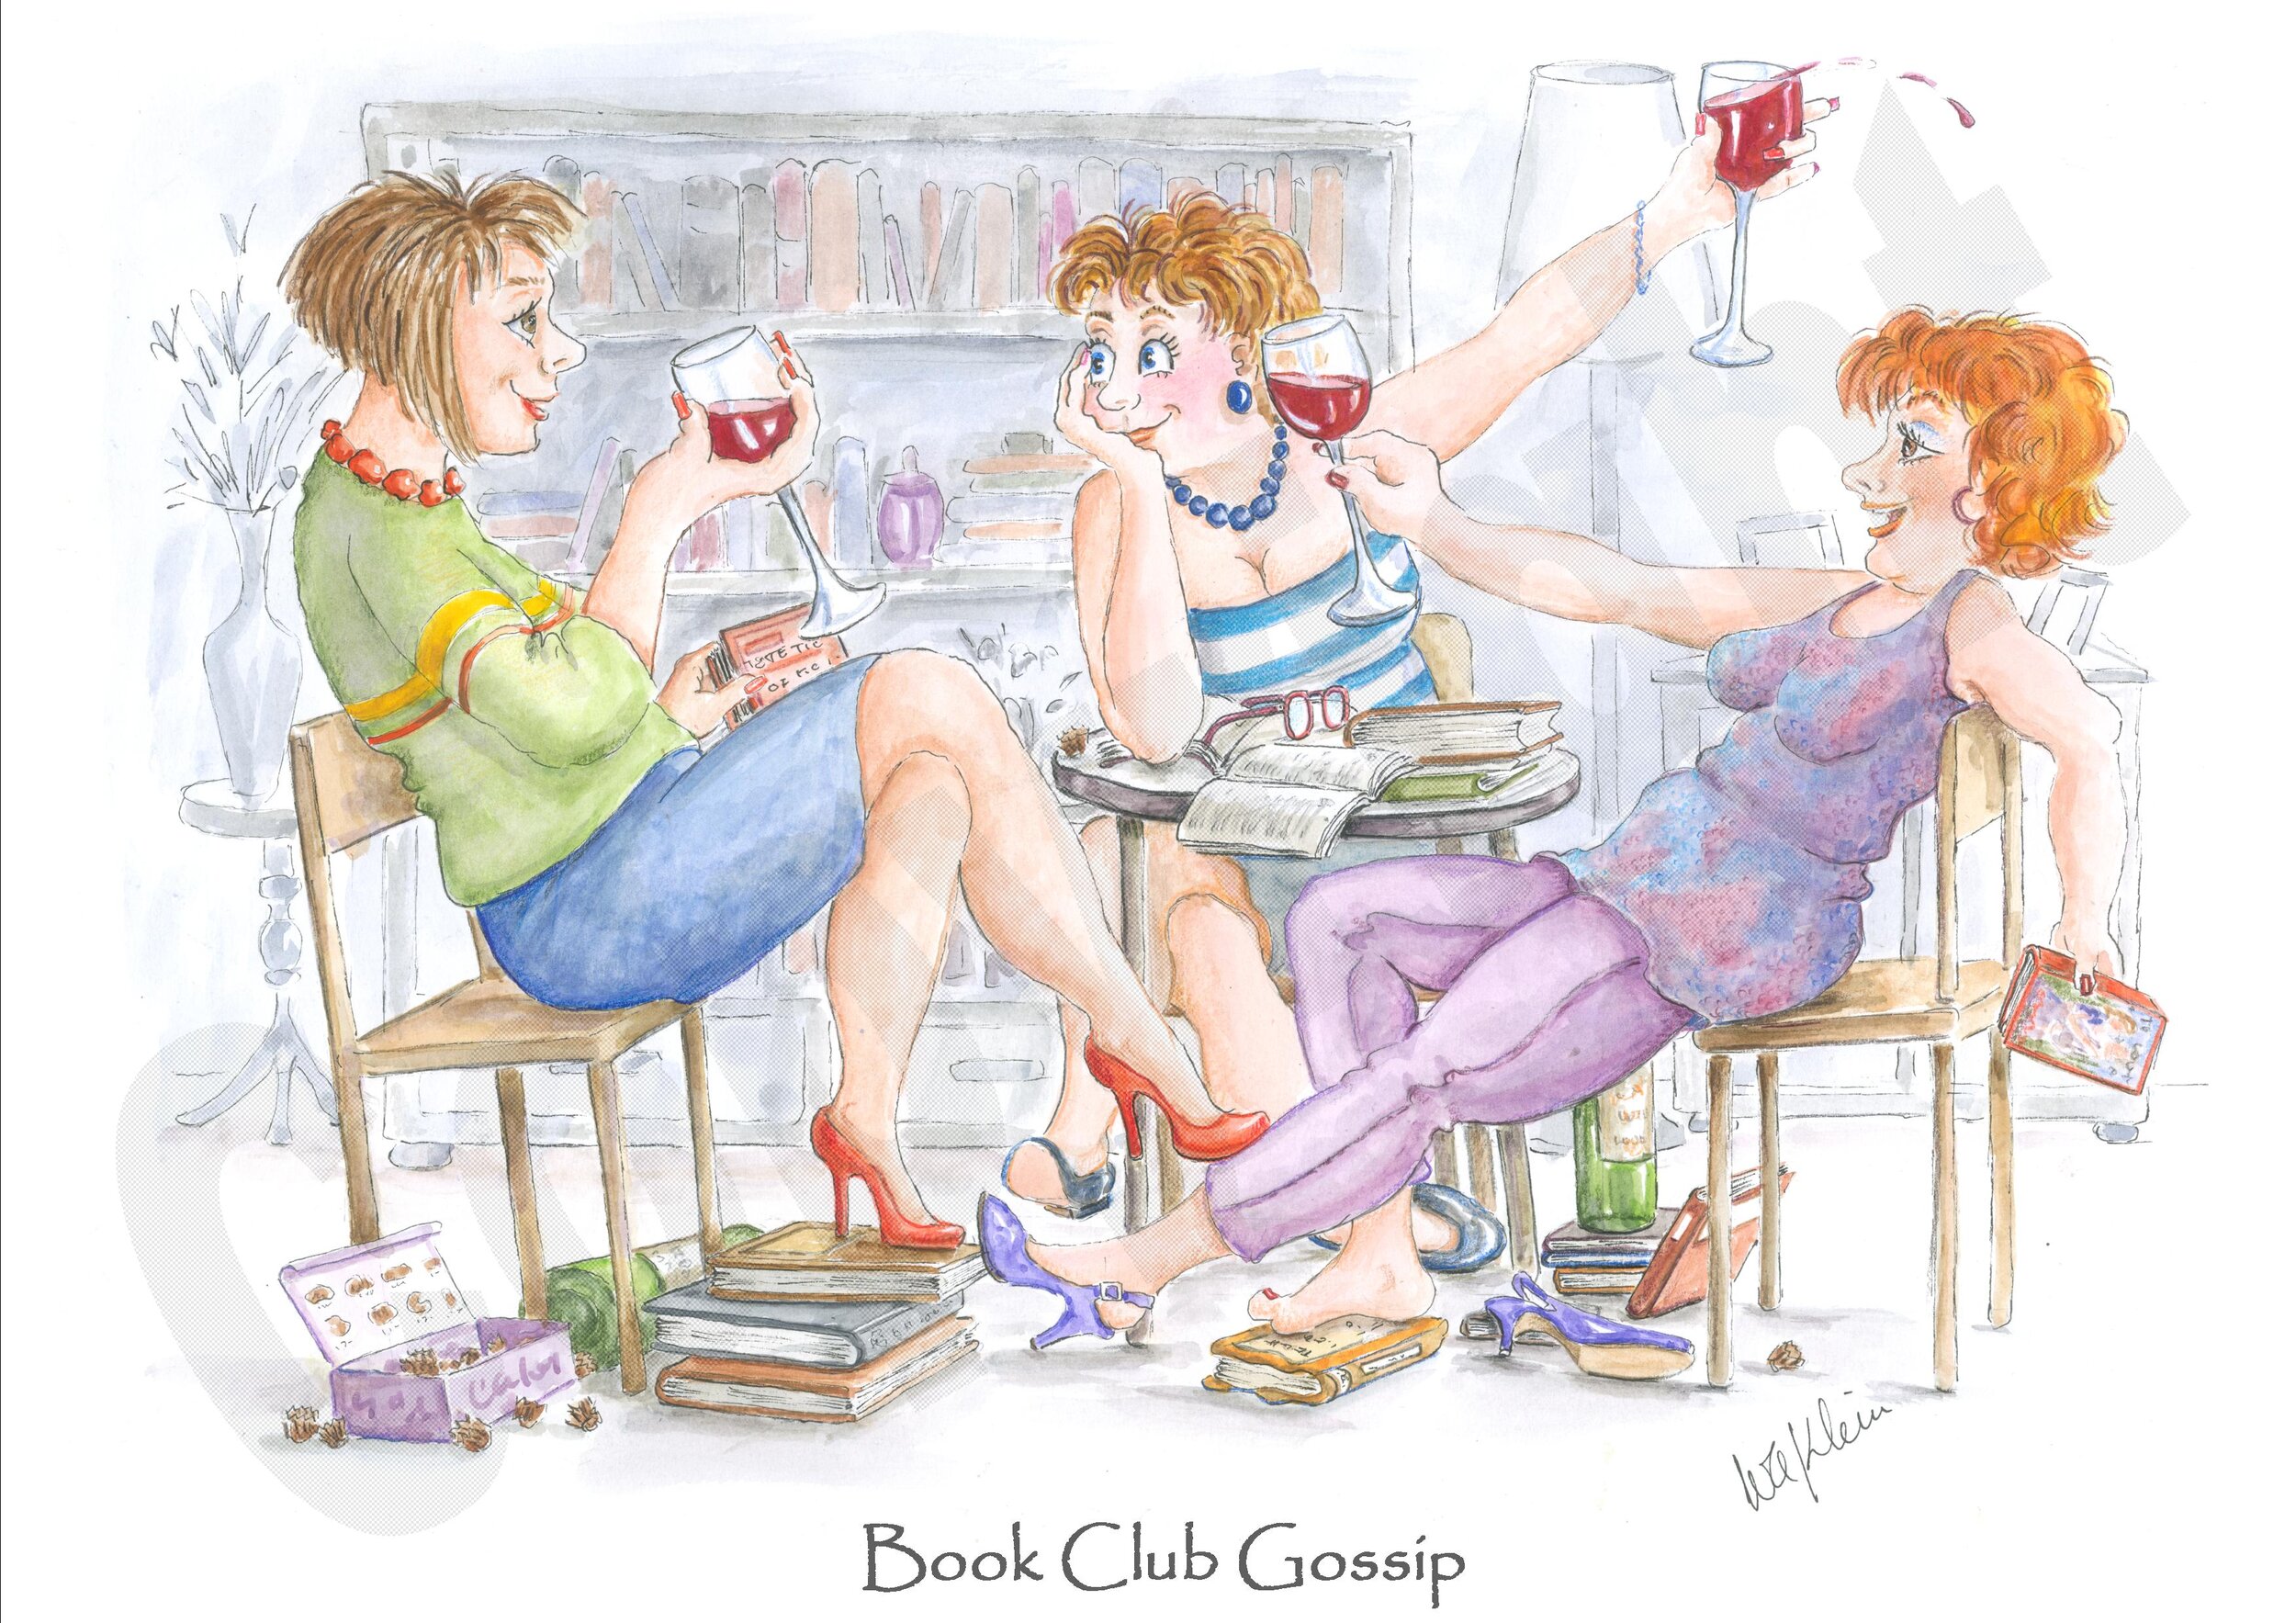 Book Club Gossip